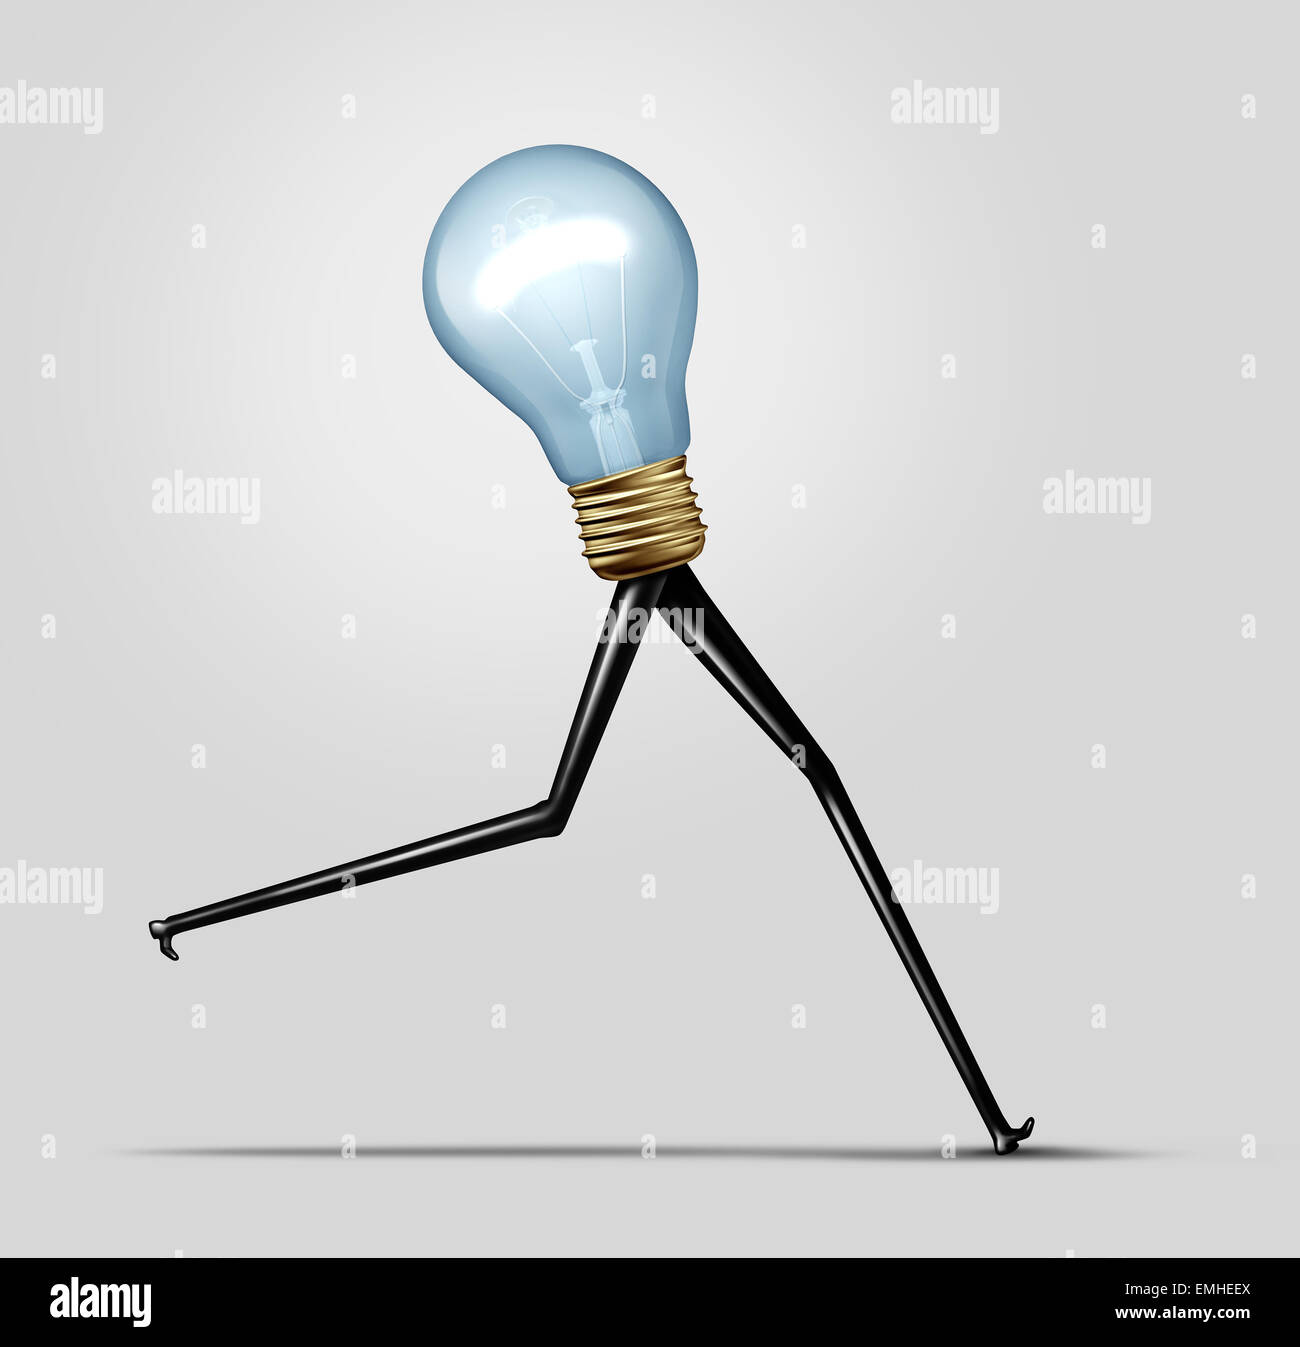 Kreative Energie und schnelles Denken-Business-Konzept als eine strahlende helle Glühbirne mit langen Beinen laufen schnell als Cretivity Leistung Metapher für schnelle Produktion und Idee Lösung. Stockfoto